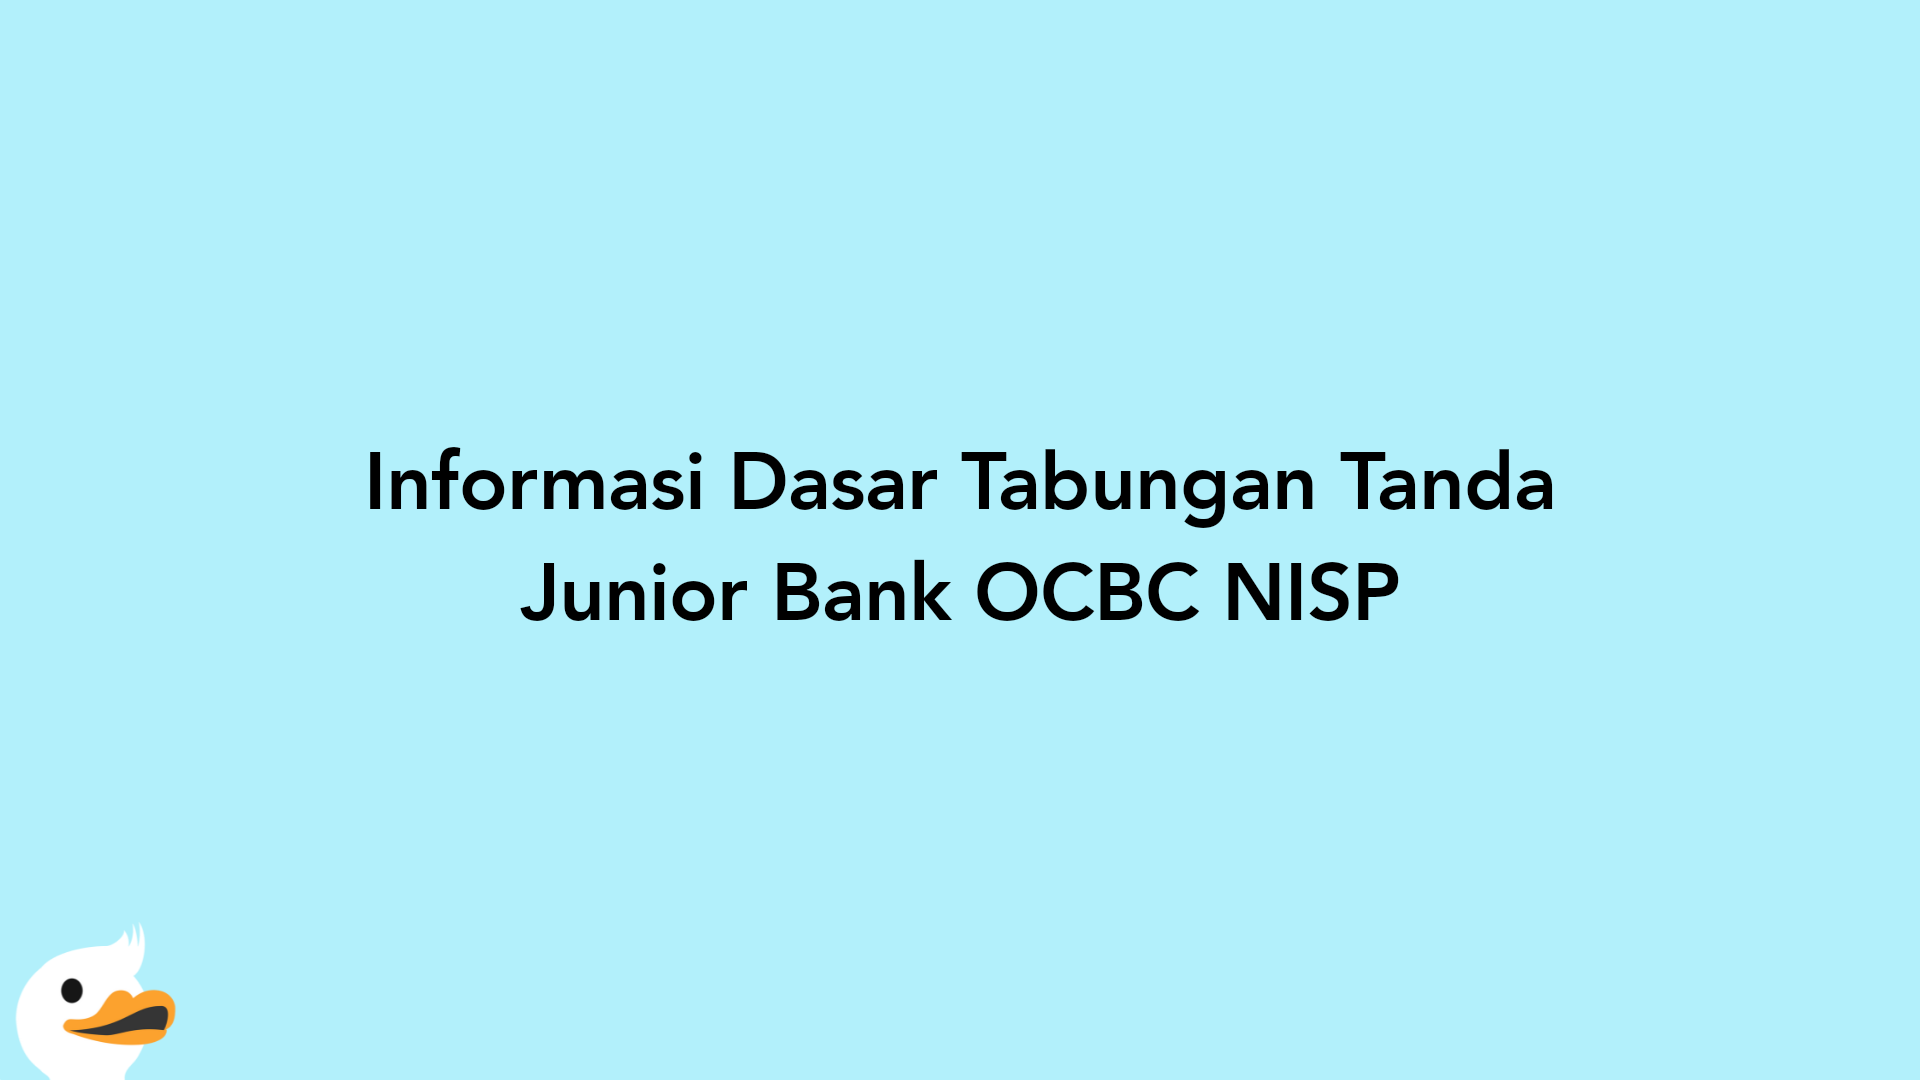 Informasi Dasar Tabungan Tanda Junior Bank OCBC NISP